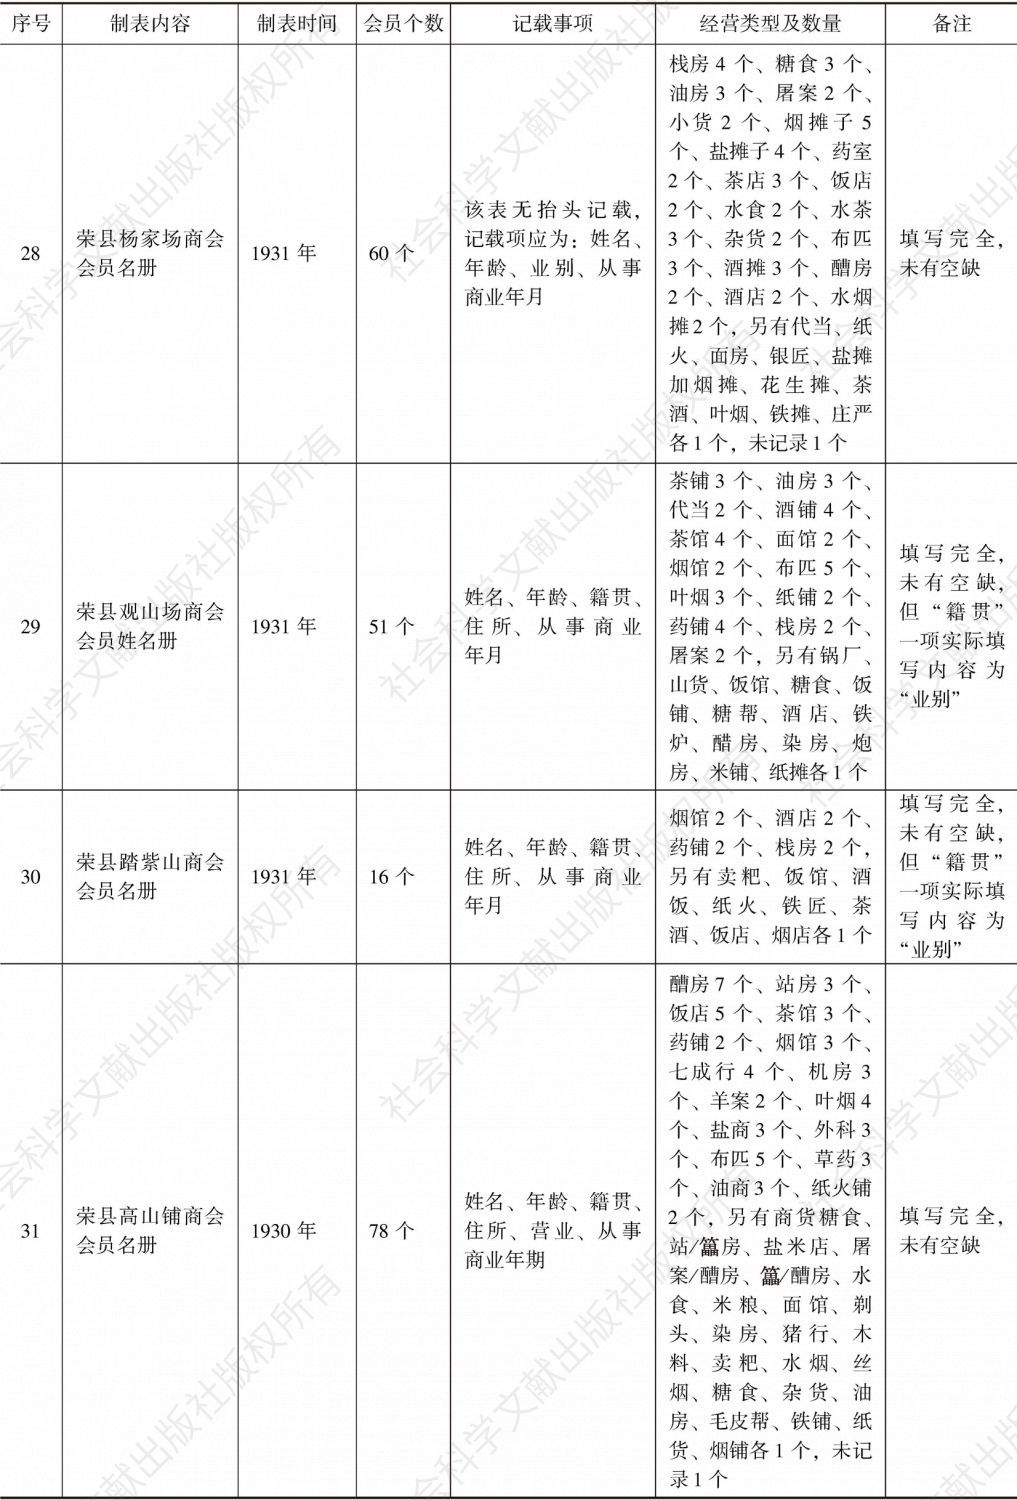 荣县商会事务分所造报名册汇编-续表7